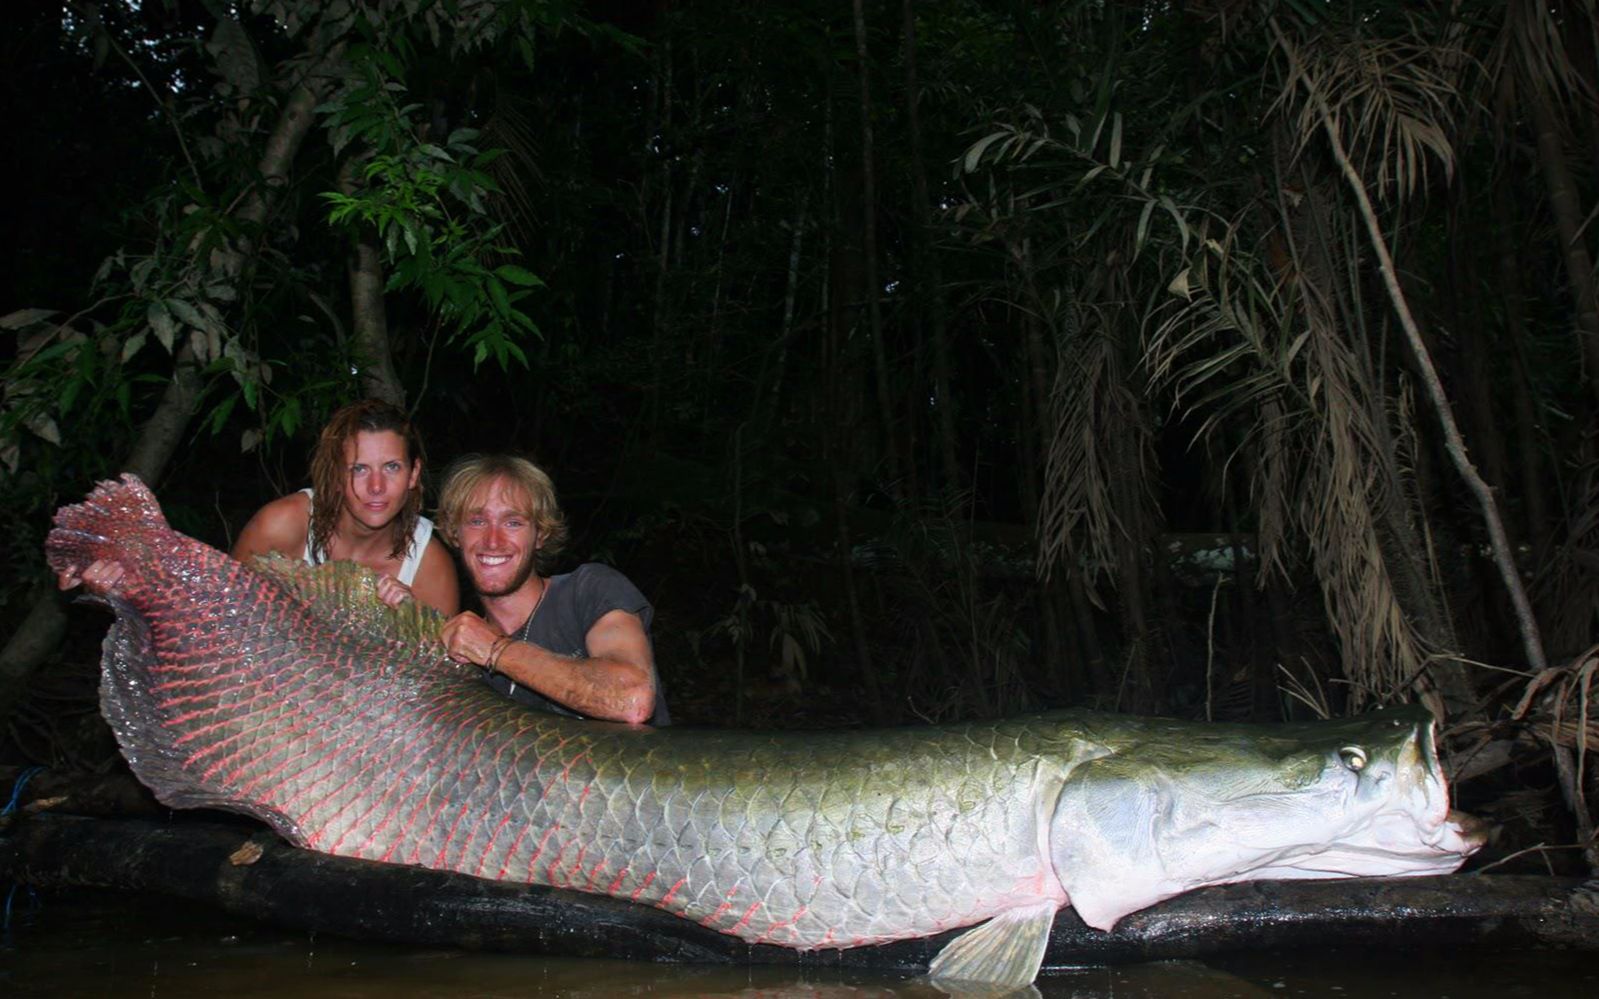 亚马逊河生物巨型图片